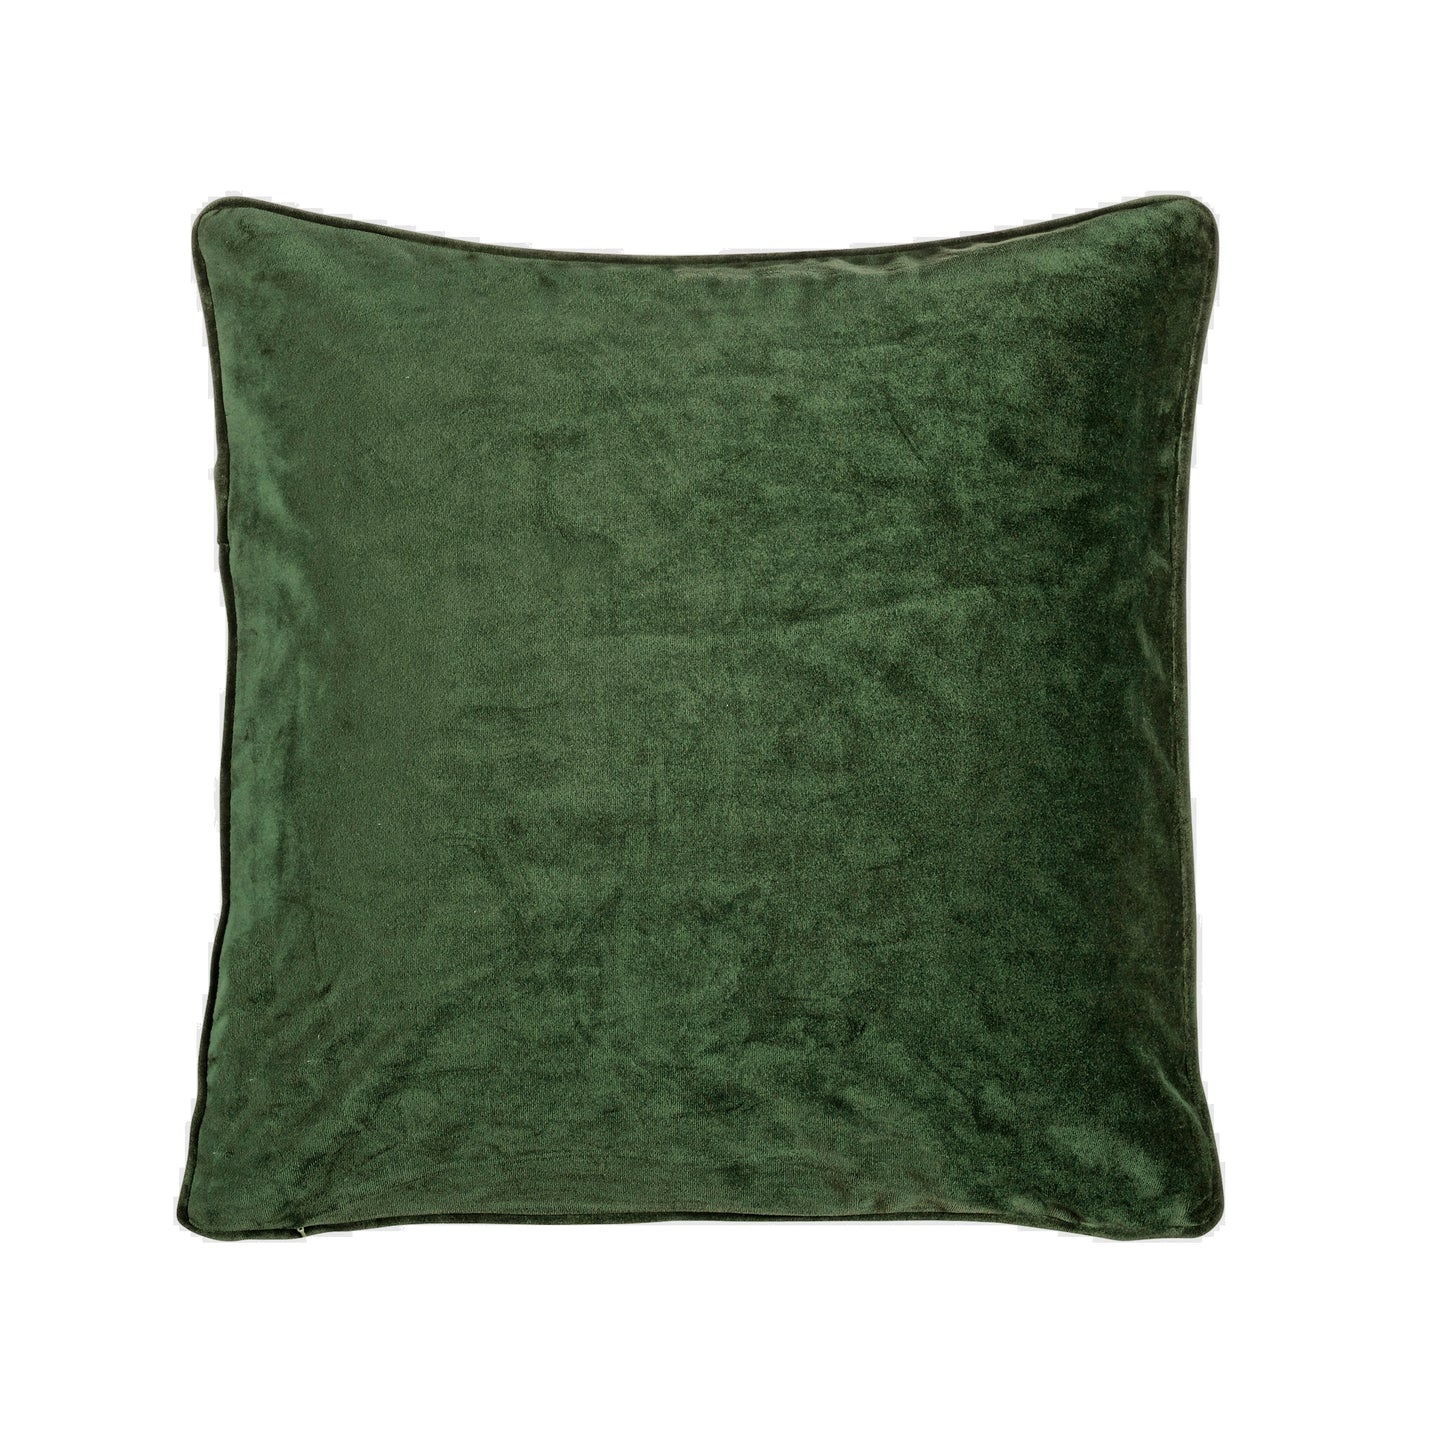 Fondaco VELVET Cushion cover in Forest Green Velor, 45x45 cm